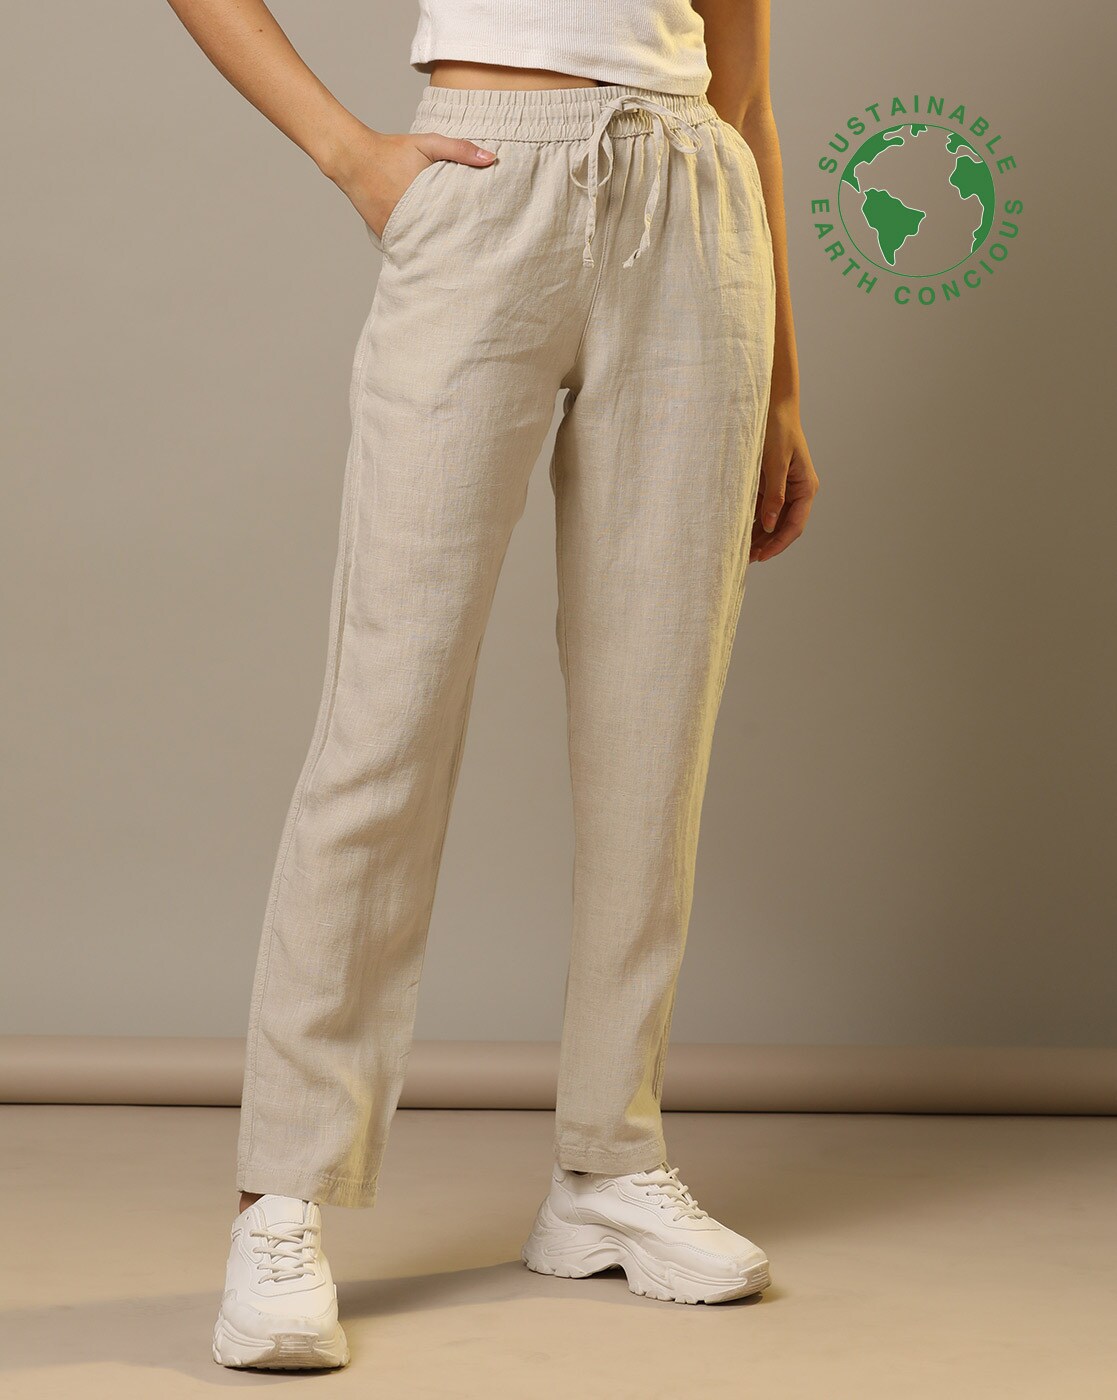 Women Linen Trousers  Buy Women Linen Trousers online in India